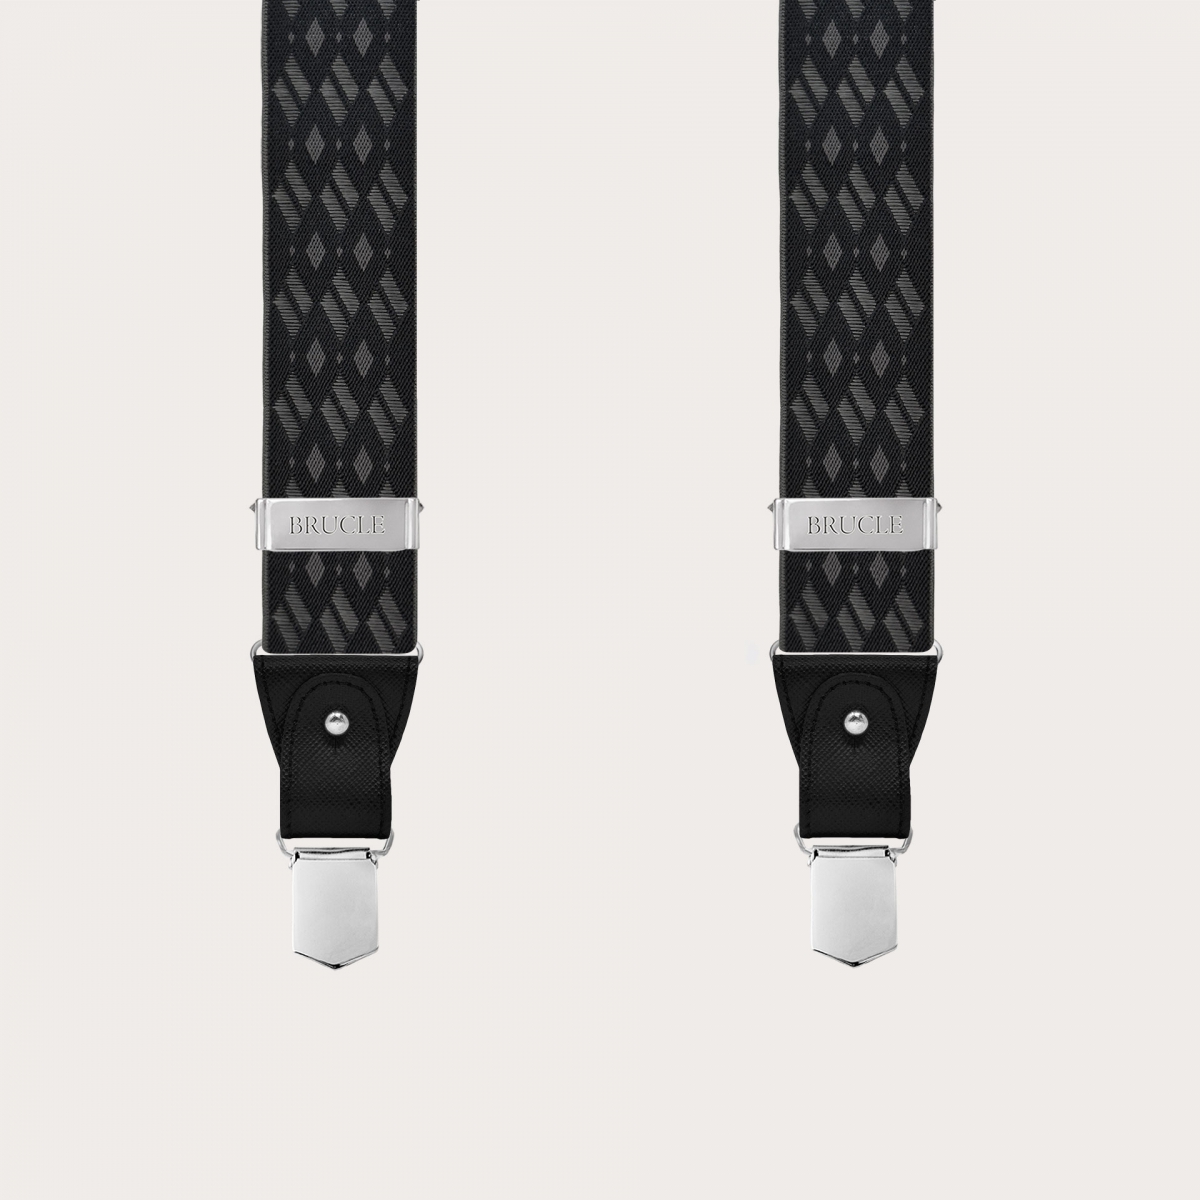 Tirantes elegantes de rombos en negro y gris para botones o clips sin níquel